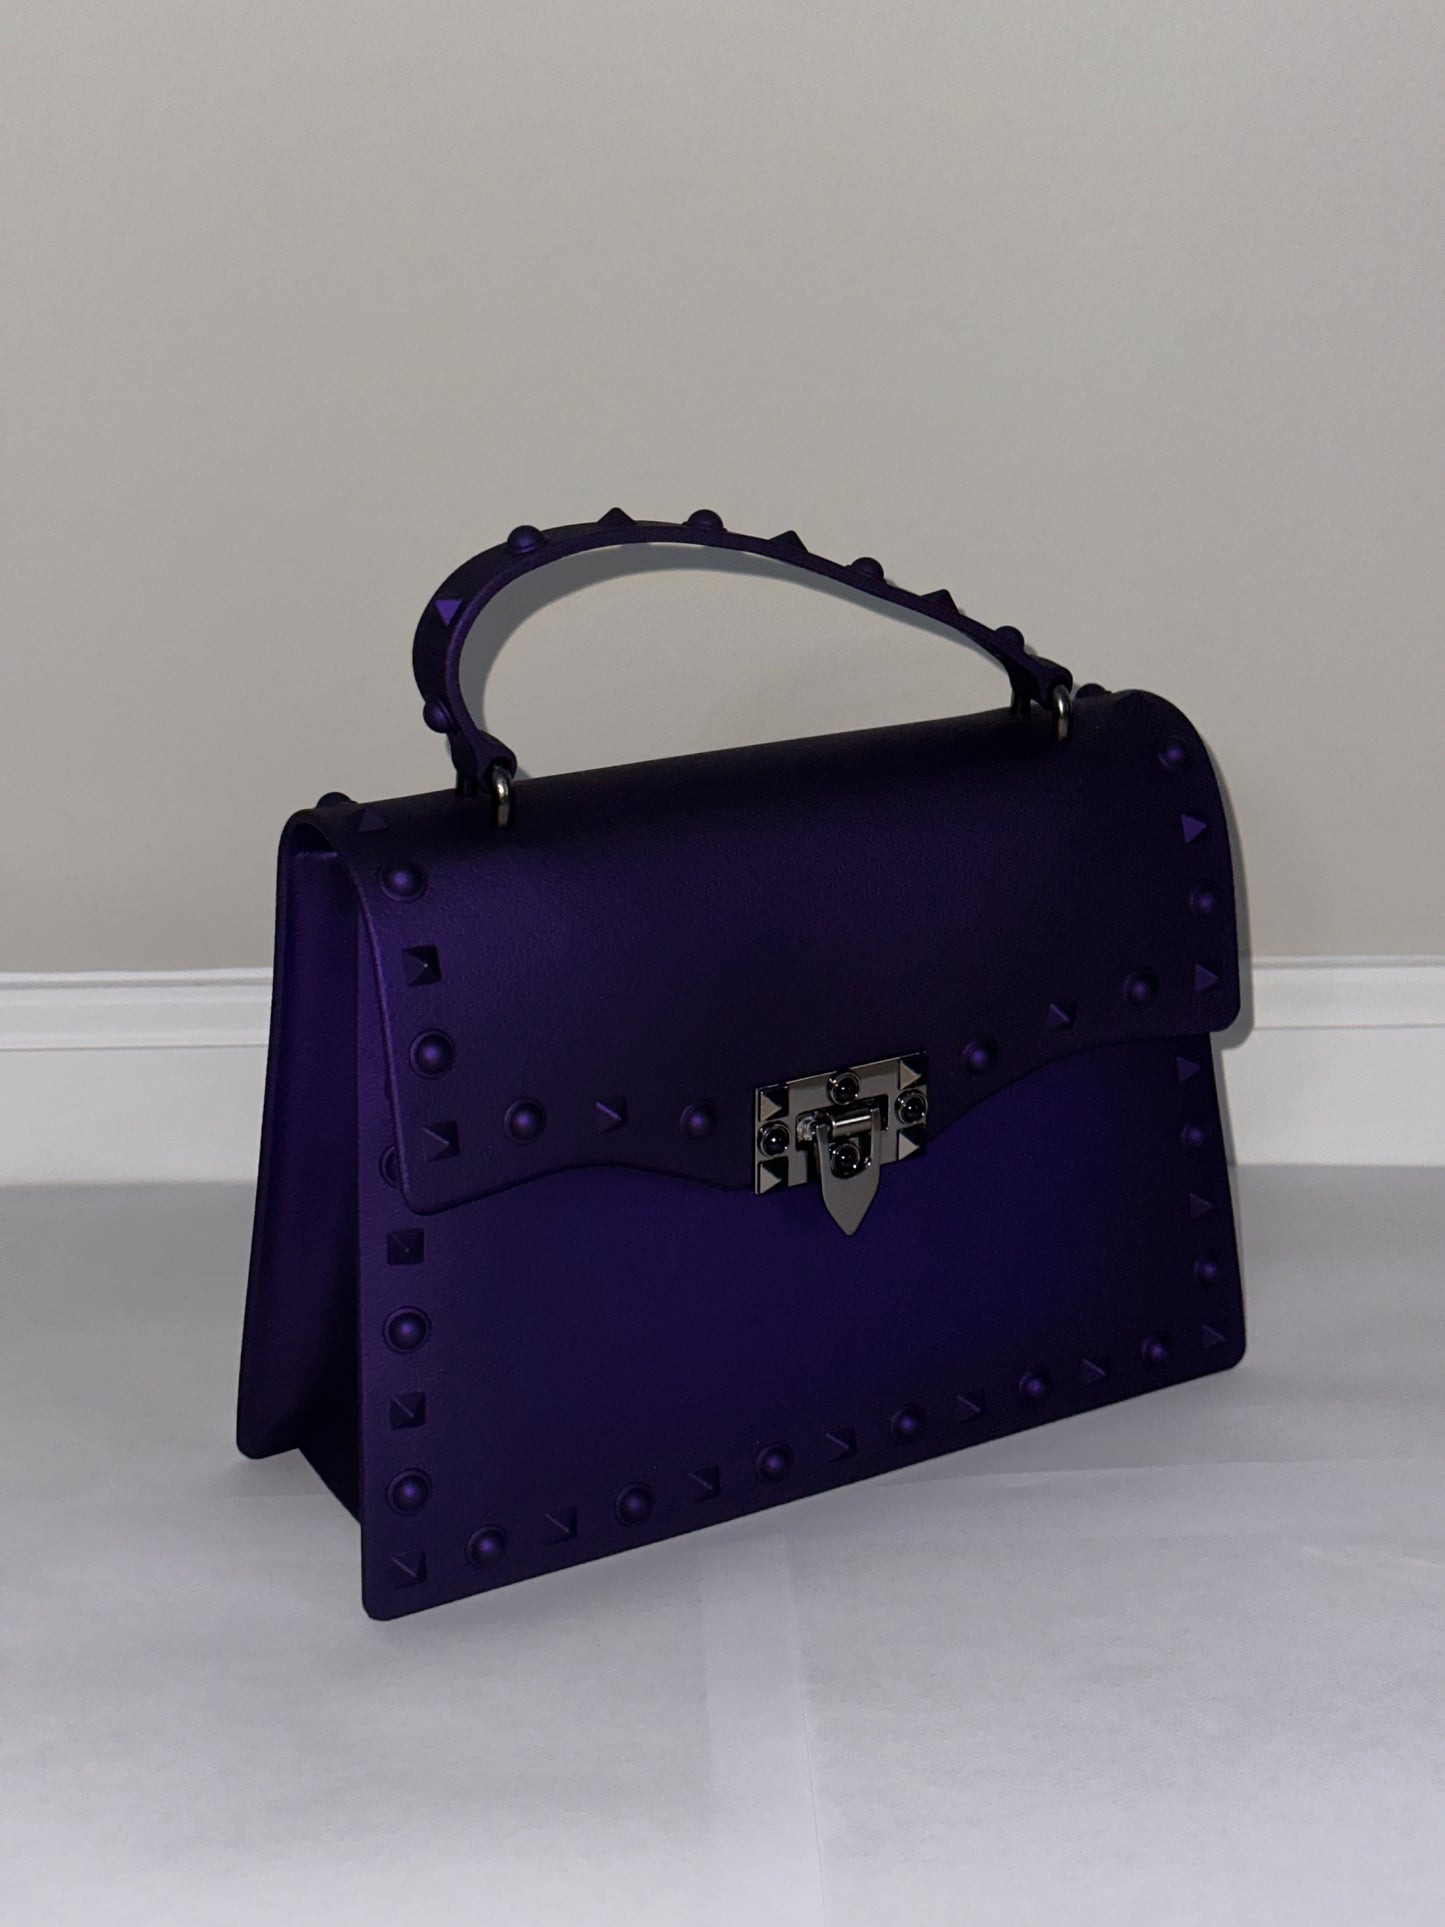 She's The One Handbag - Purple